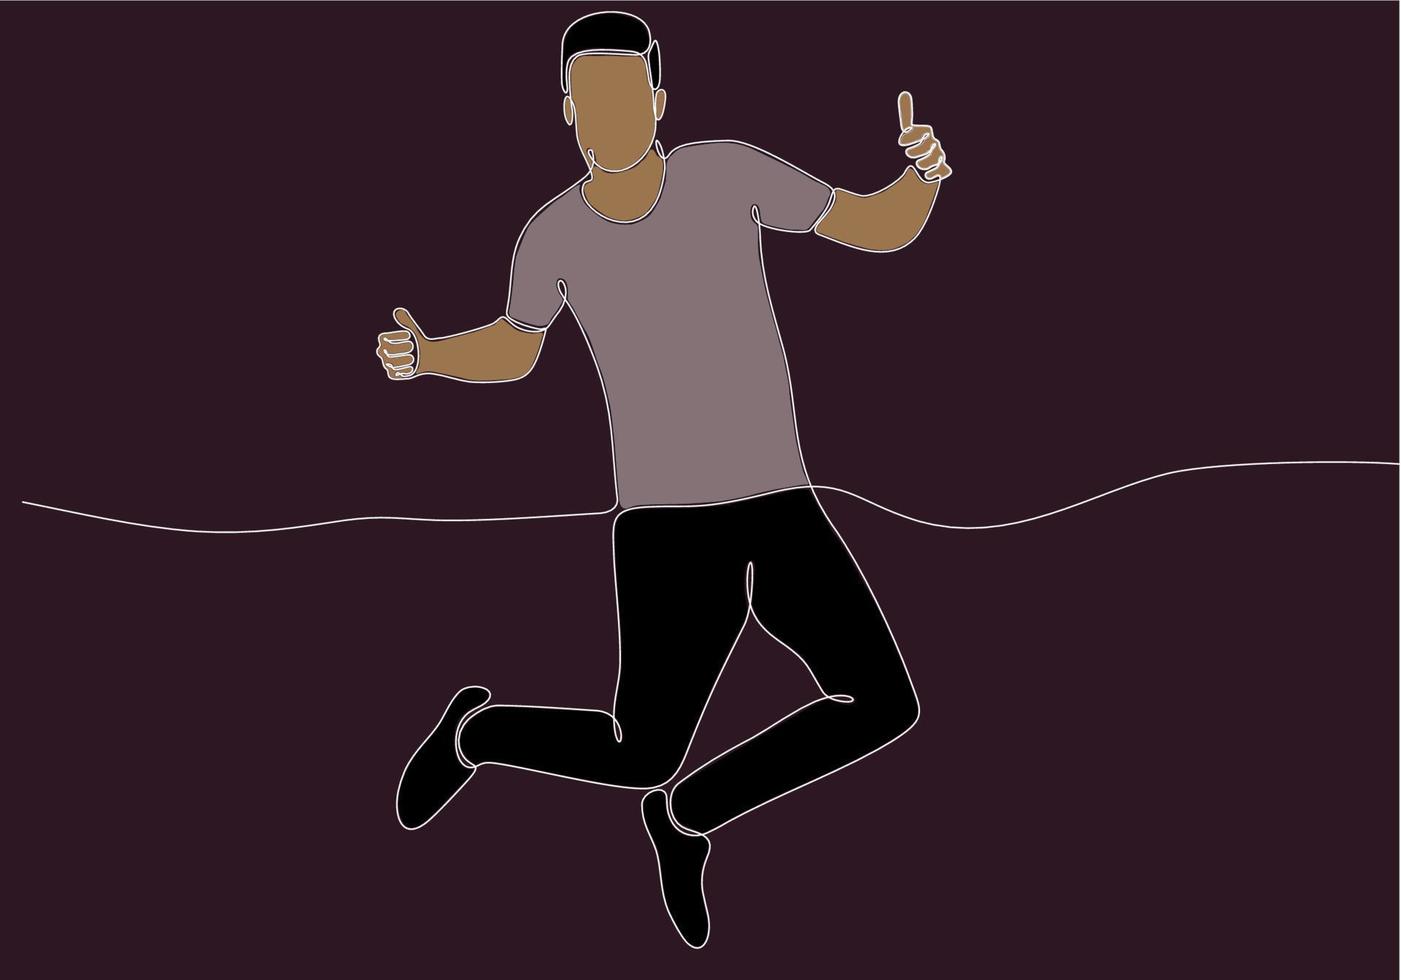 kontinuerlig linjeteckning av mannen som hoppar för lycka. vektor illustration.